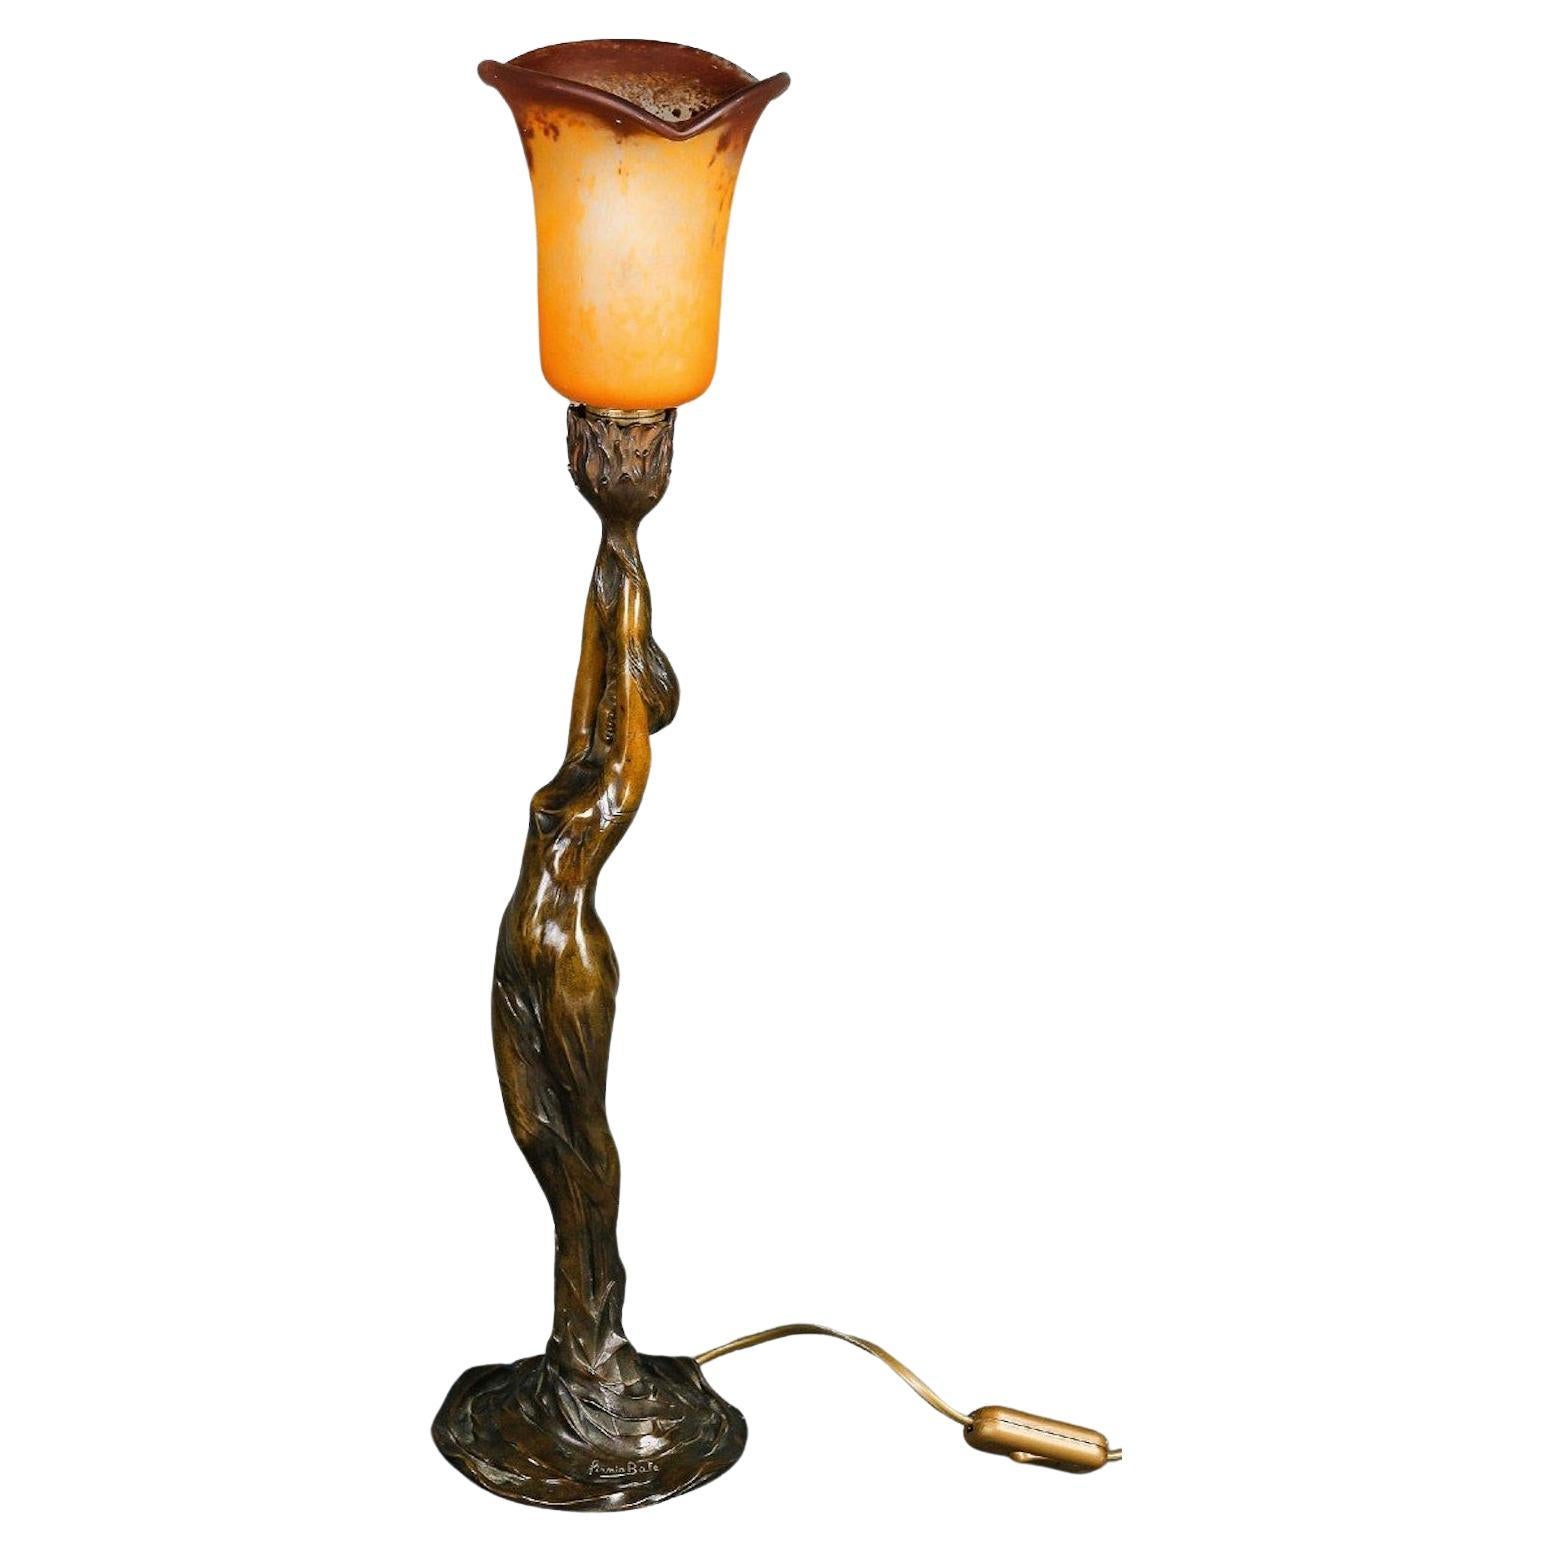 Lampe de table Art nouveau, vers 1900.